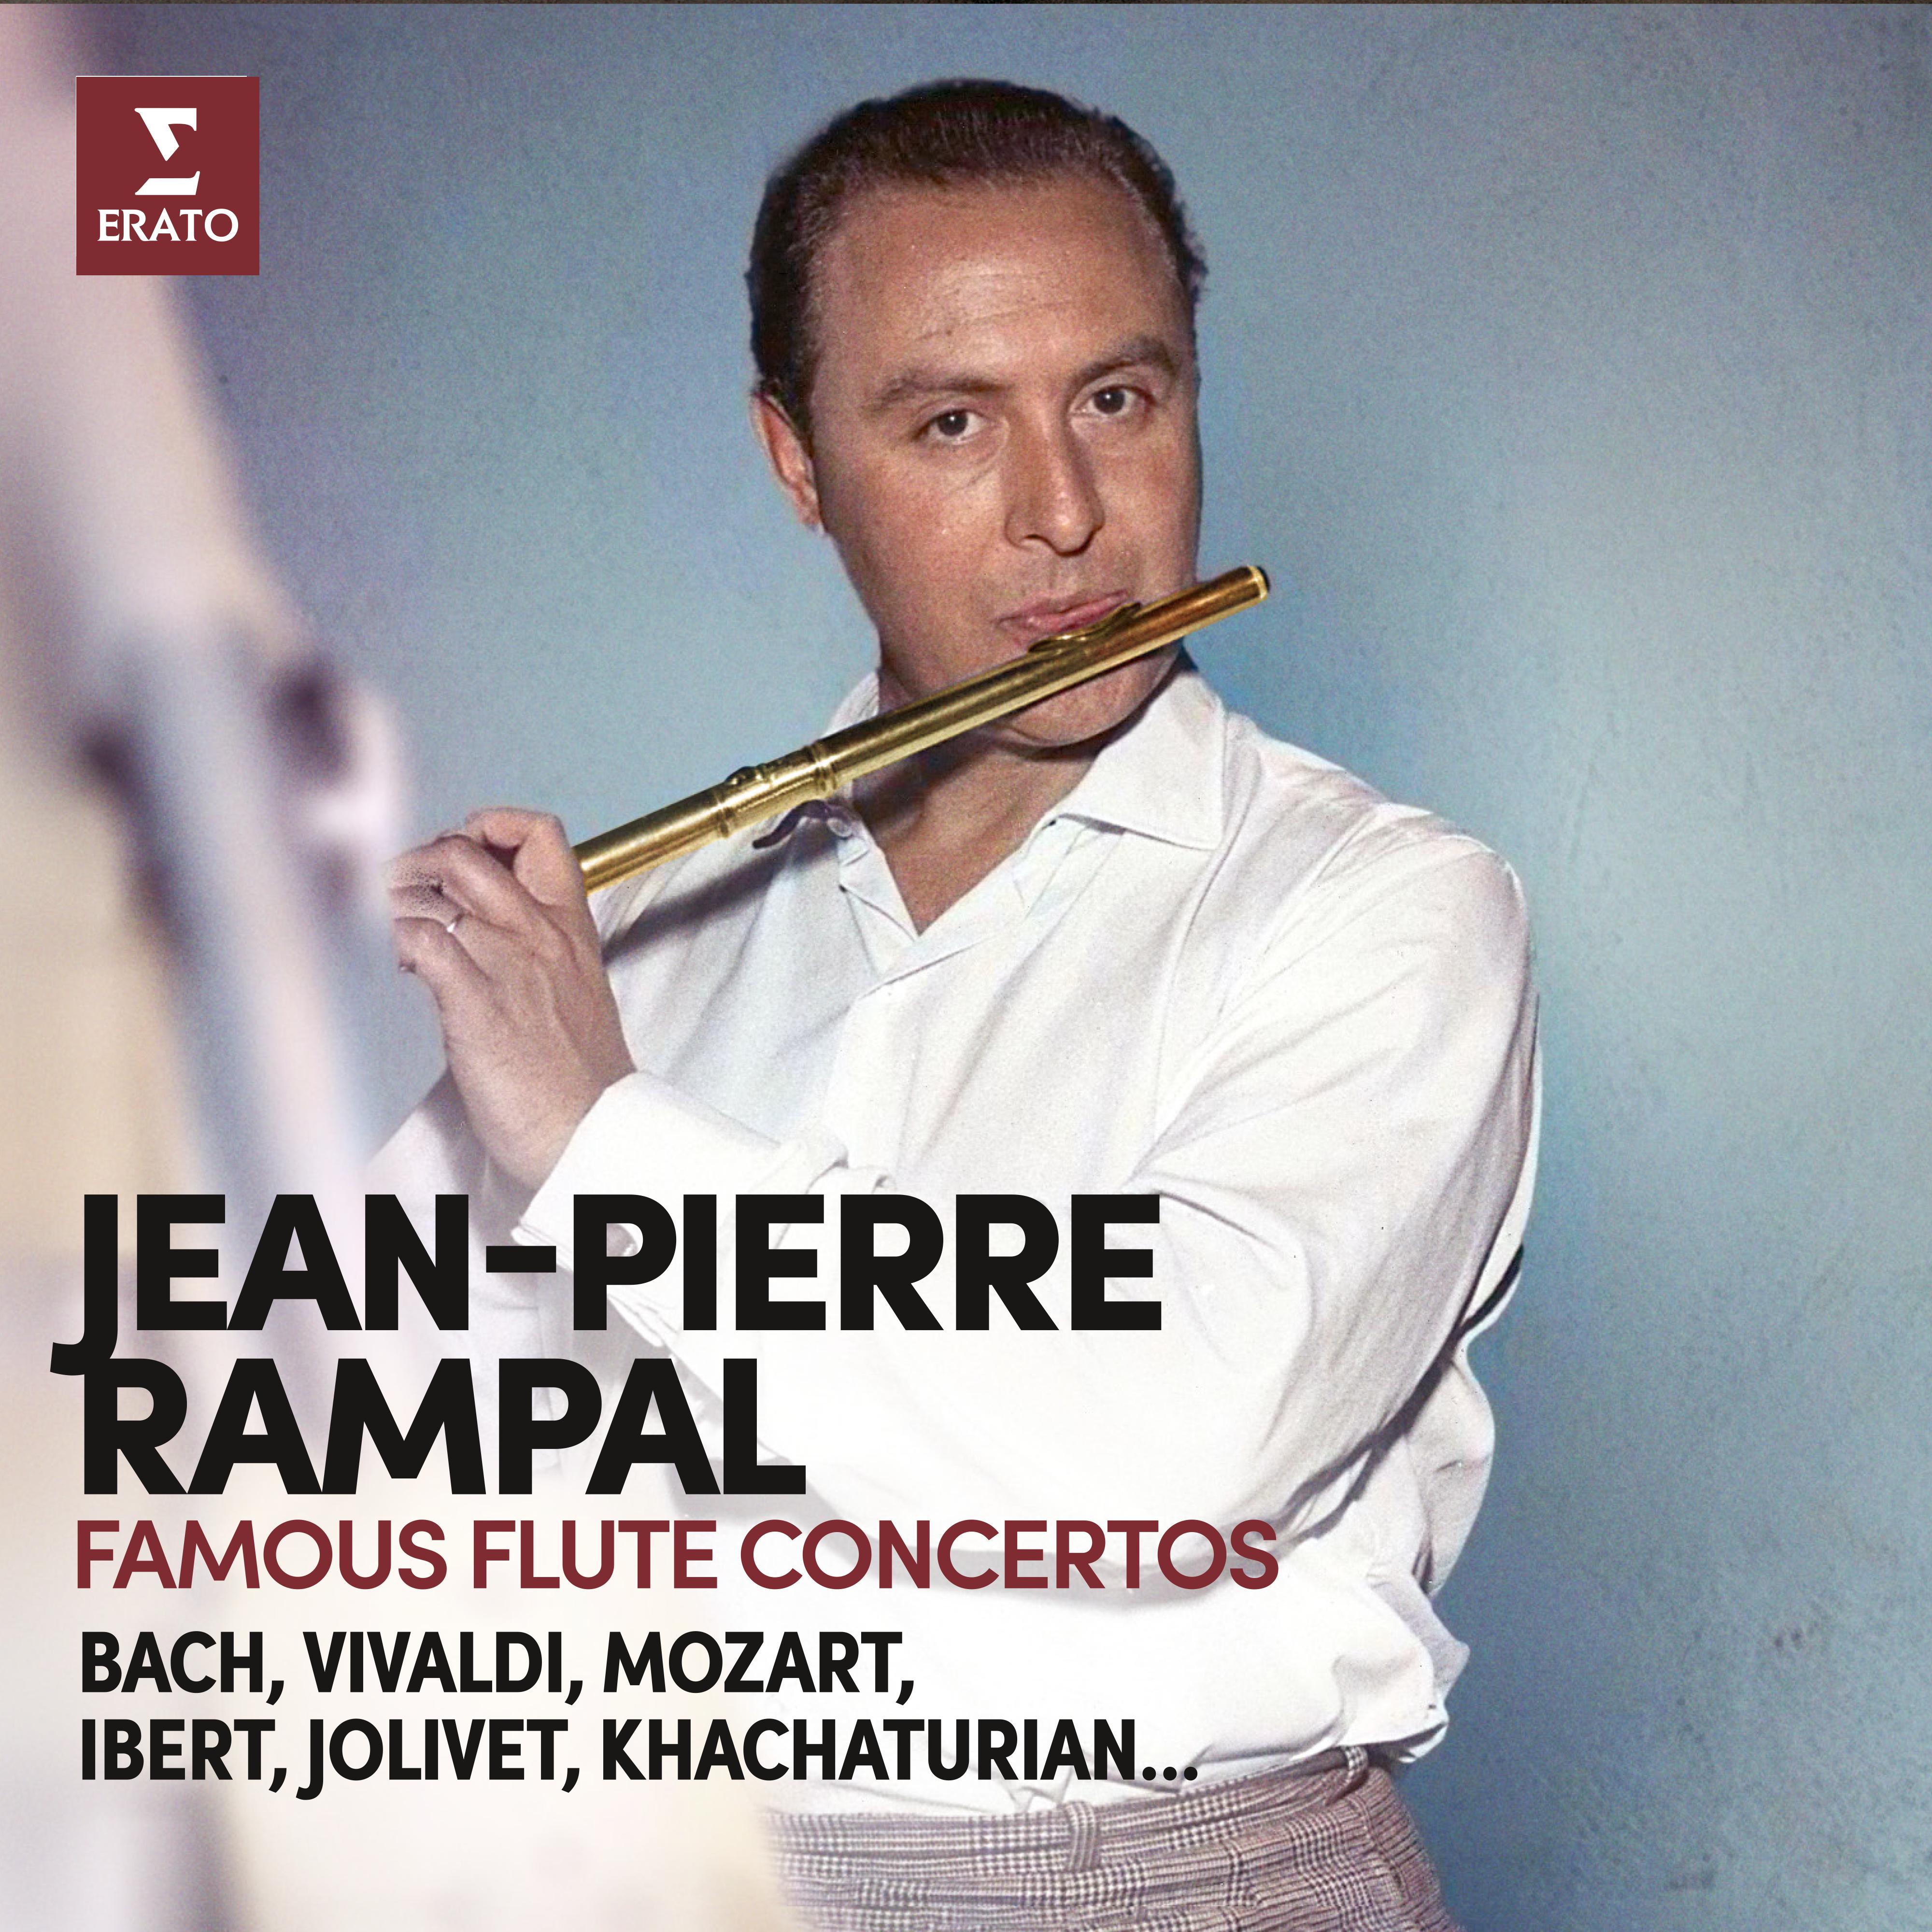 Jean-Pierre Rampal - Flute Concerto in C Major, Hob. VIIa:1: II. Adagio